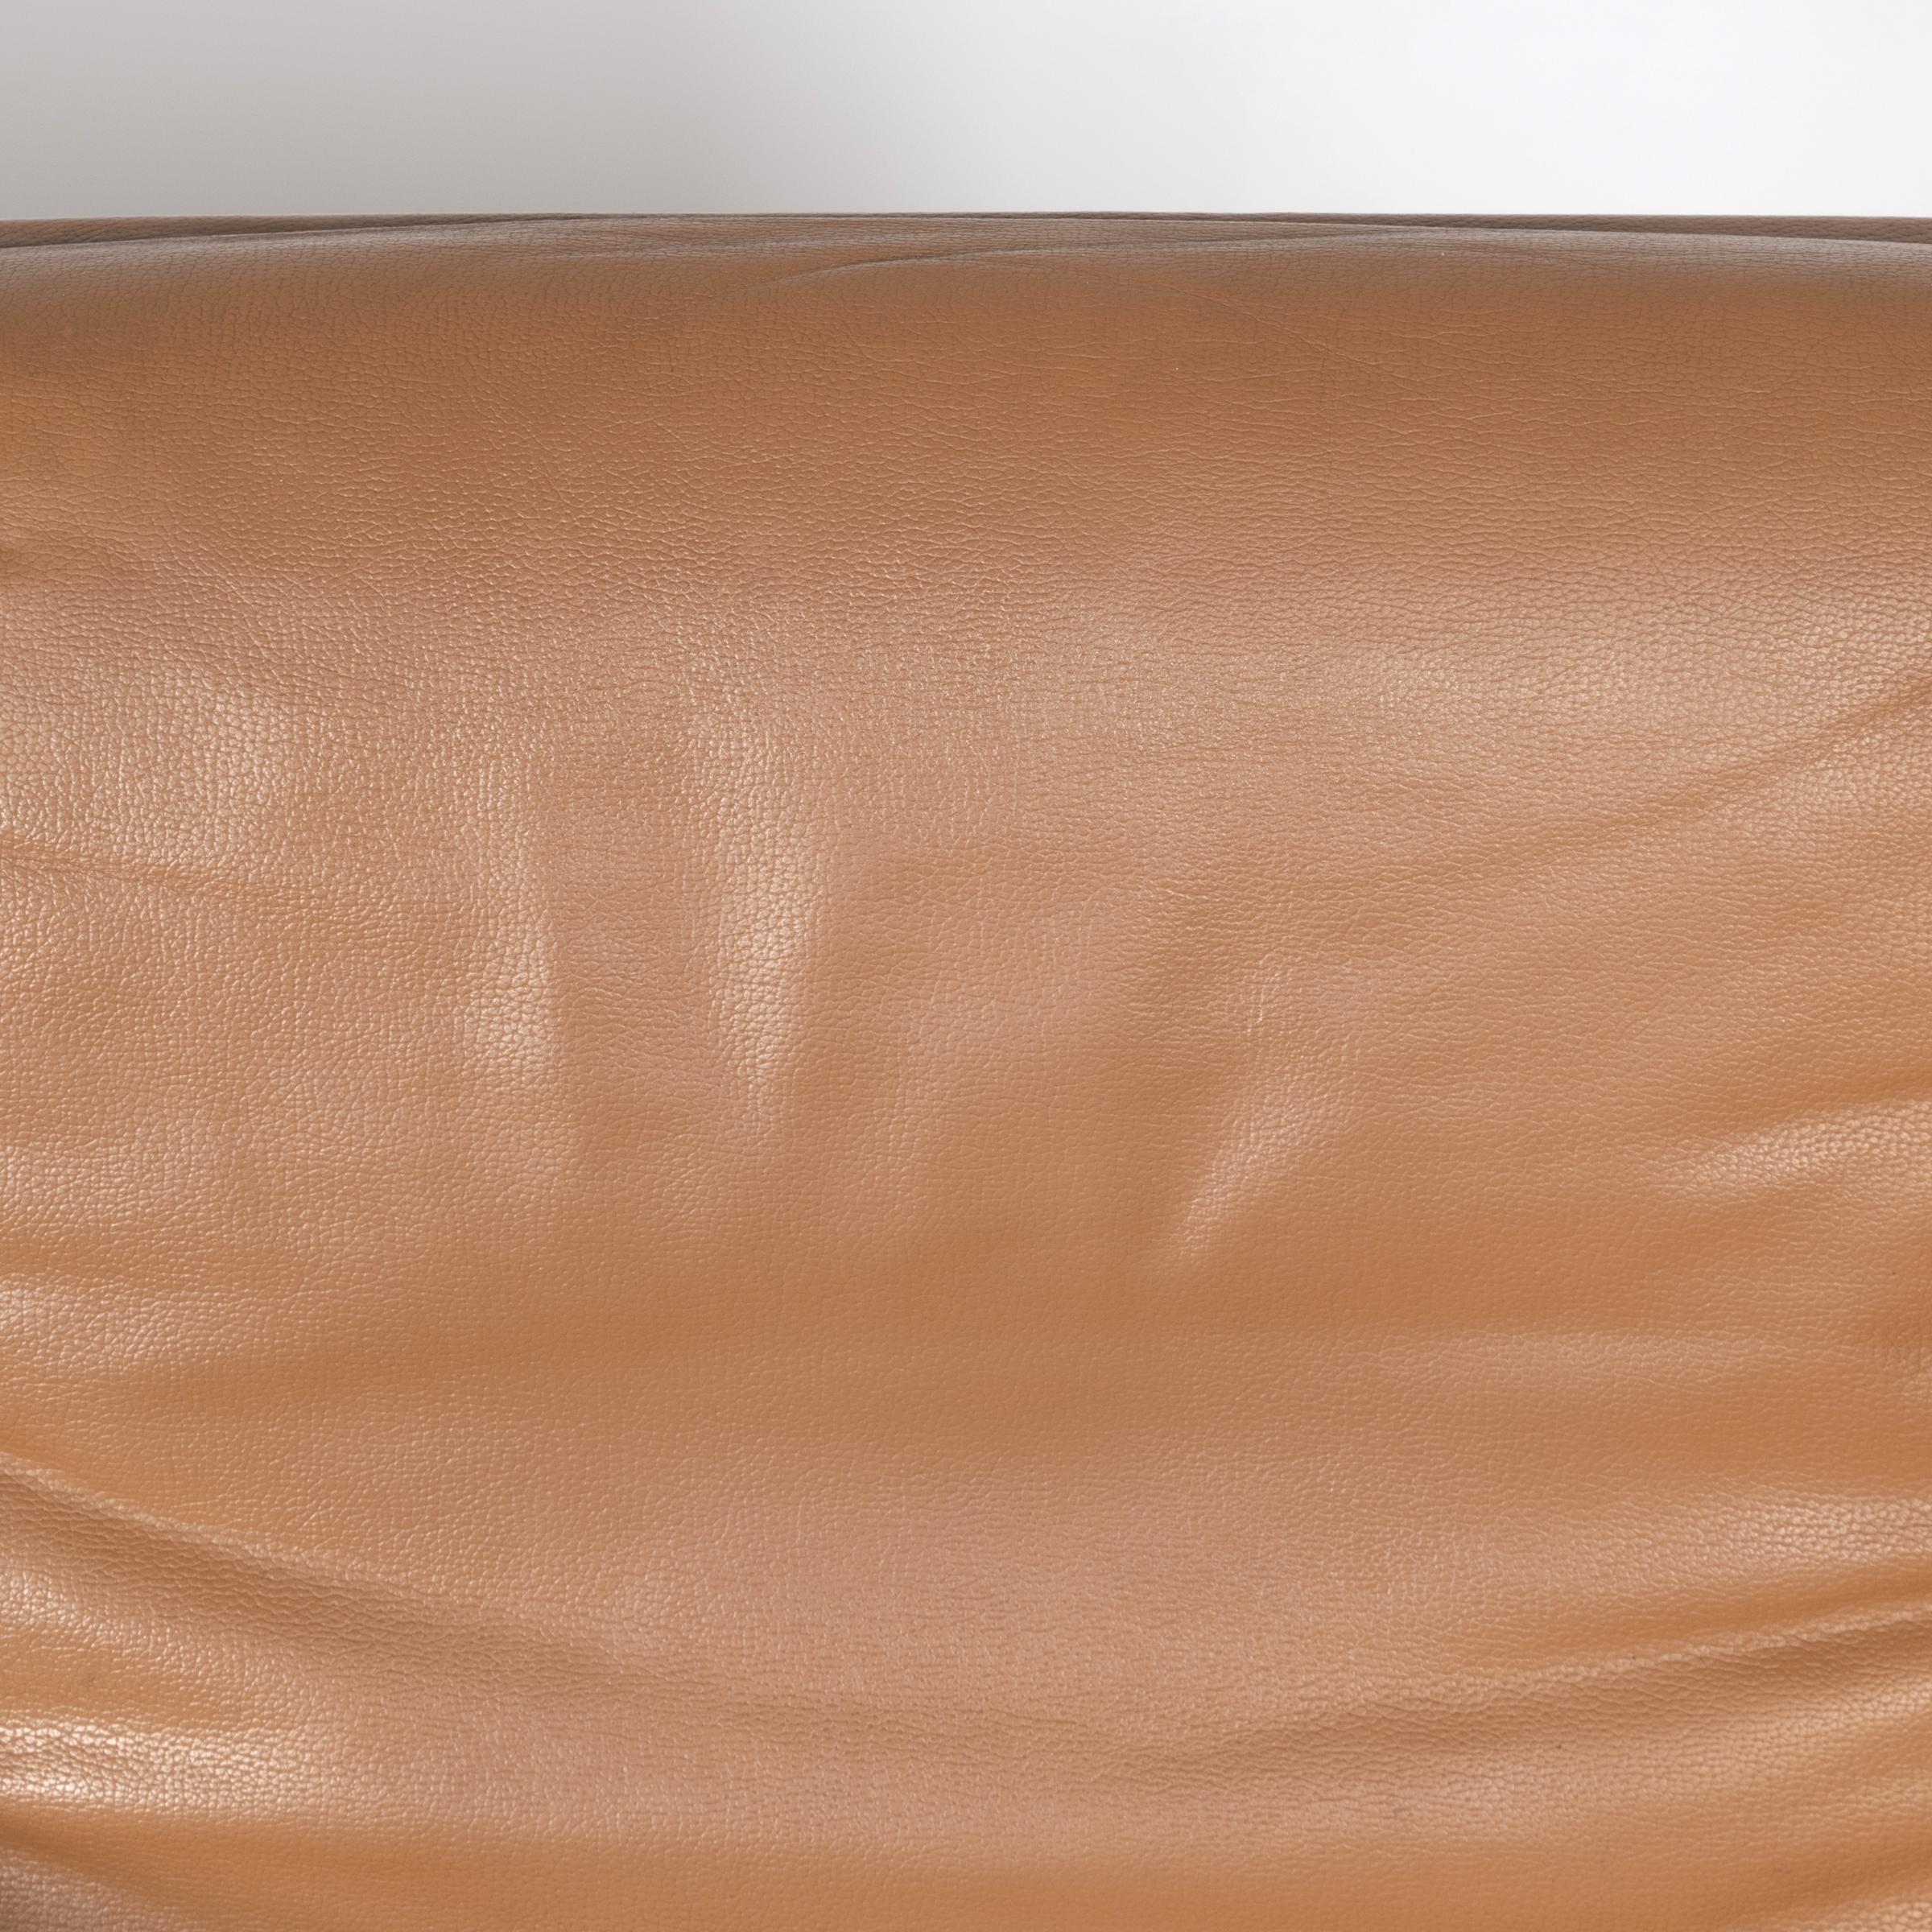 Delta Design Program 2000 Set Chairs in Padded Leather for Wilkhahn 5